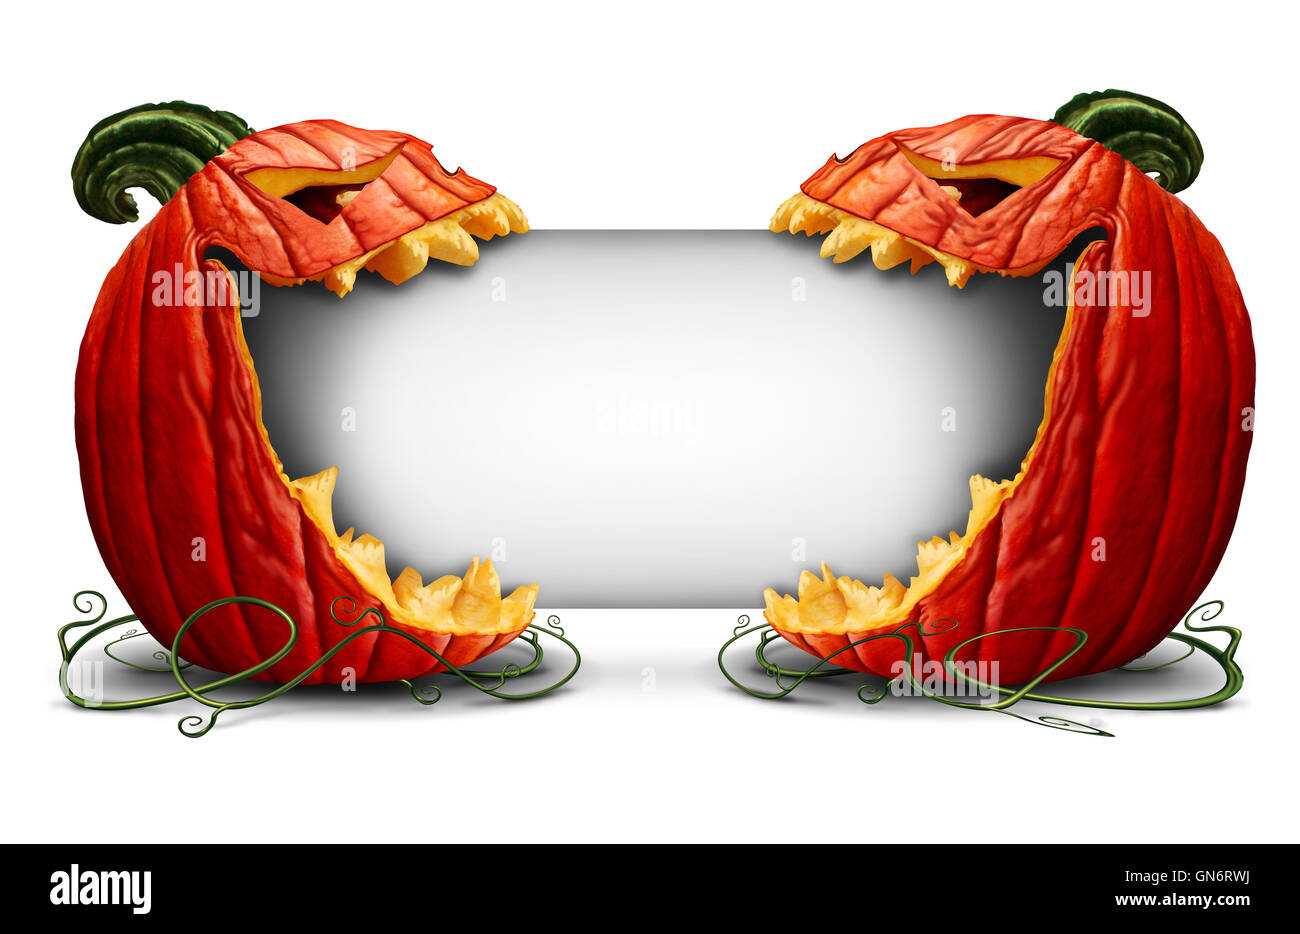 Halloween jack o lantern blank sign avec deux citrouilles personnages sur une vue de côté de mordre dans une carte blanche comme symbole pour l'automne et l'automne communication festive avec 3D illustration éléments. Banque D'Images